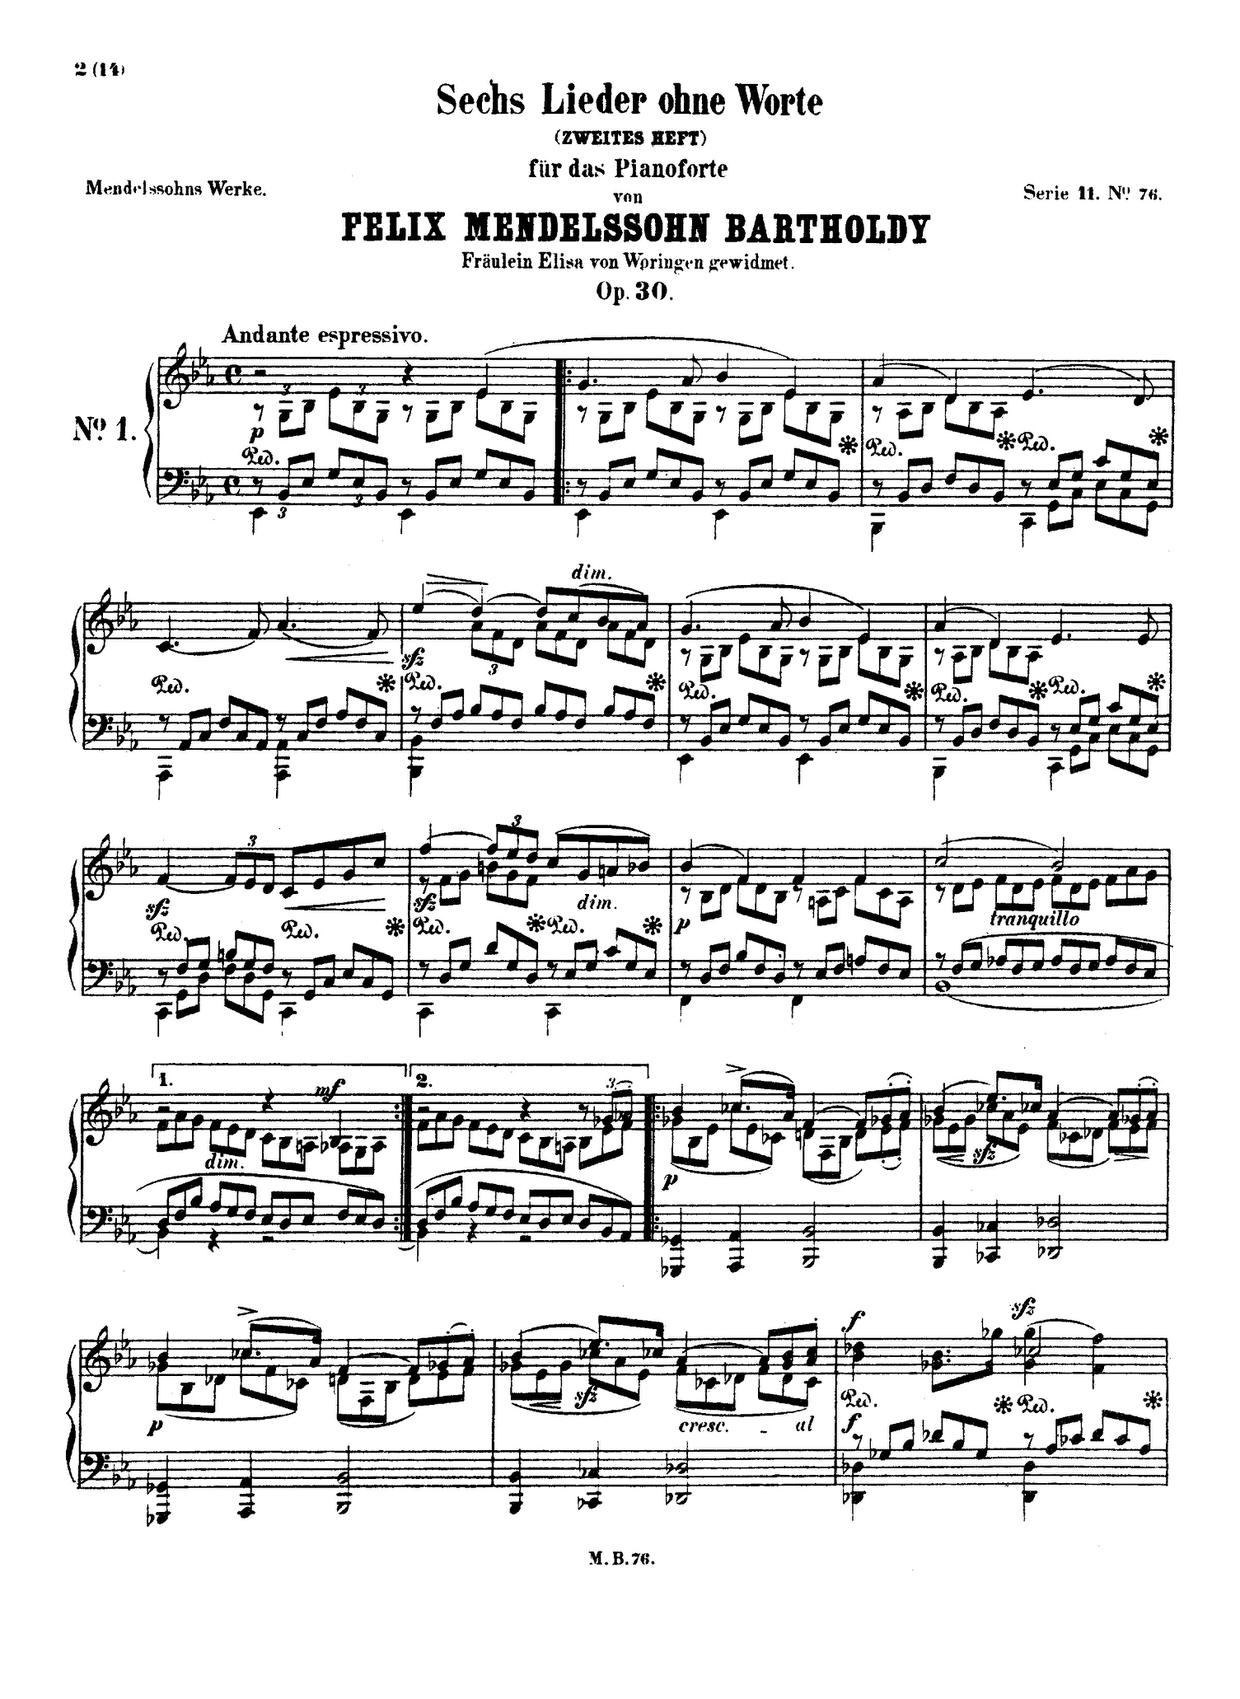 Lieder ohne Worte, Book 2, Op. 30 (Excerpts): No. 6 in F-Sharp Minor, MWV U 110 "Venetianisches Score